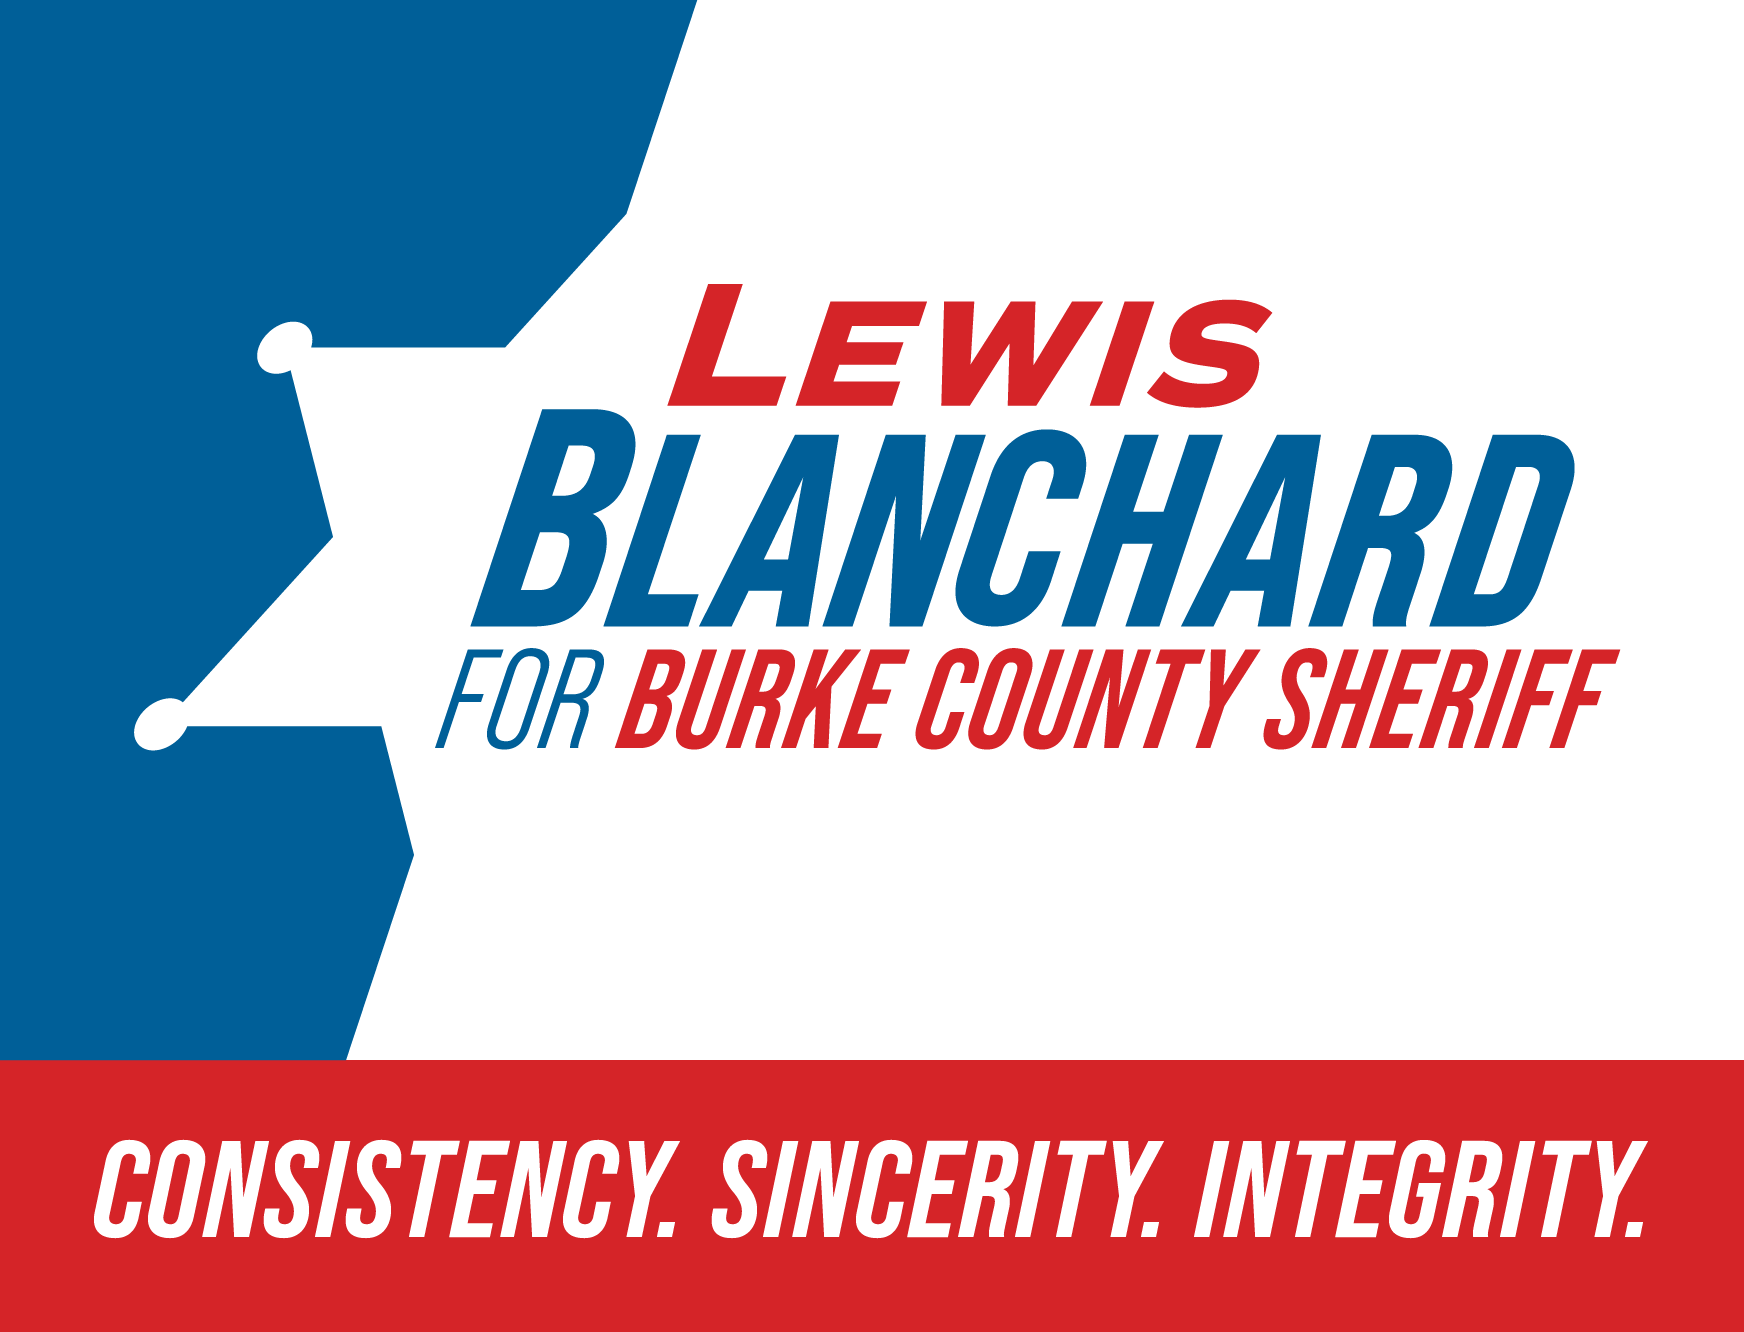 Blandhard For Sheriff